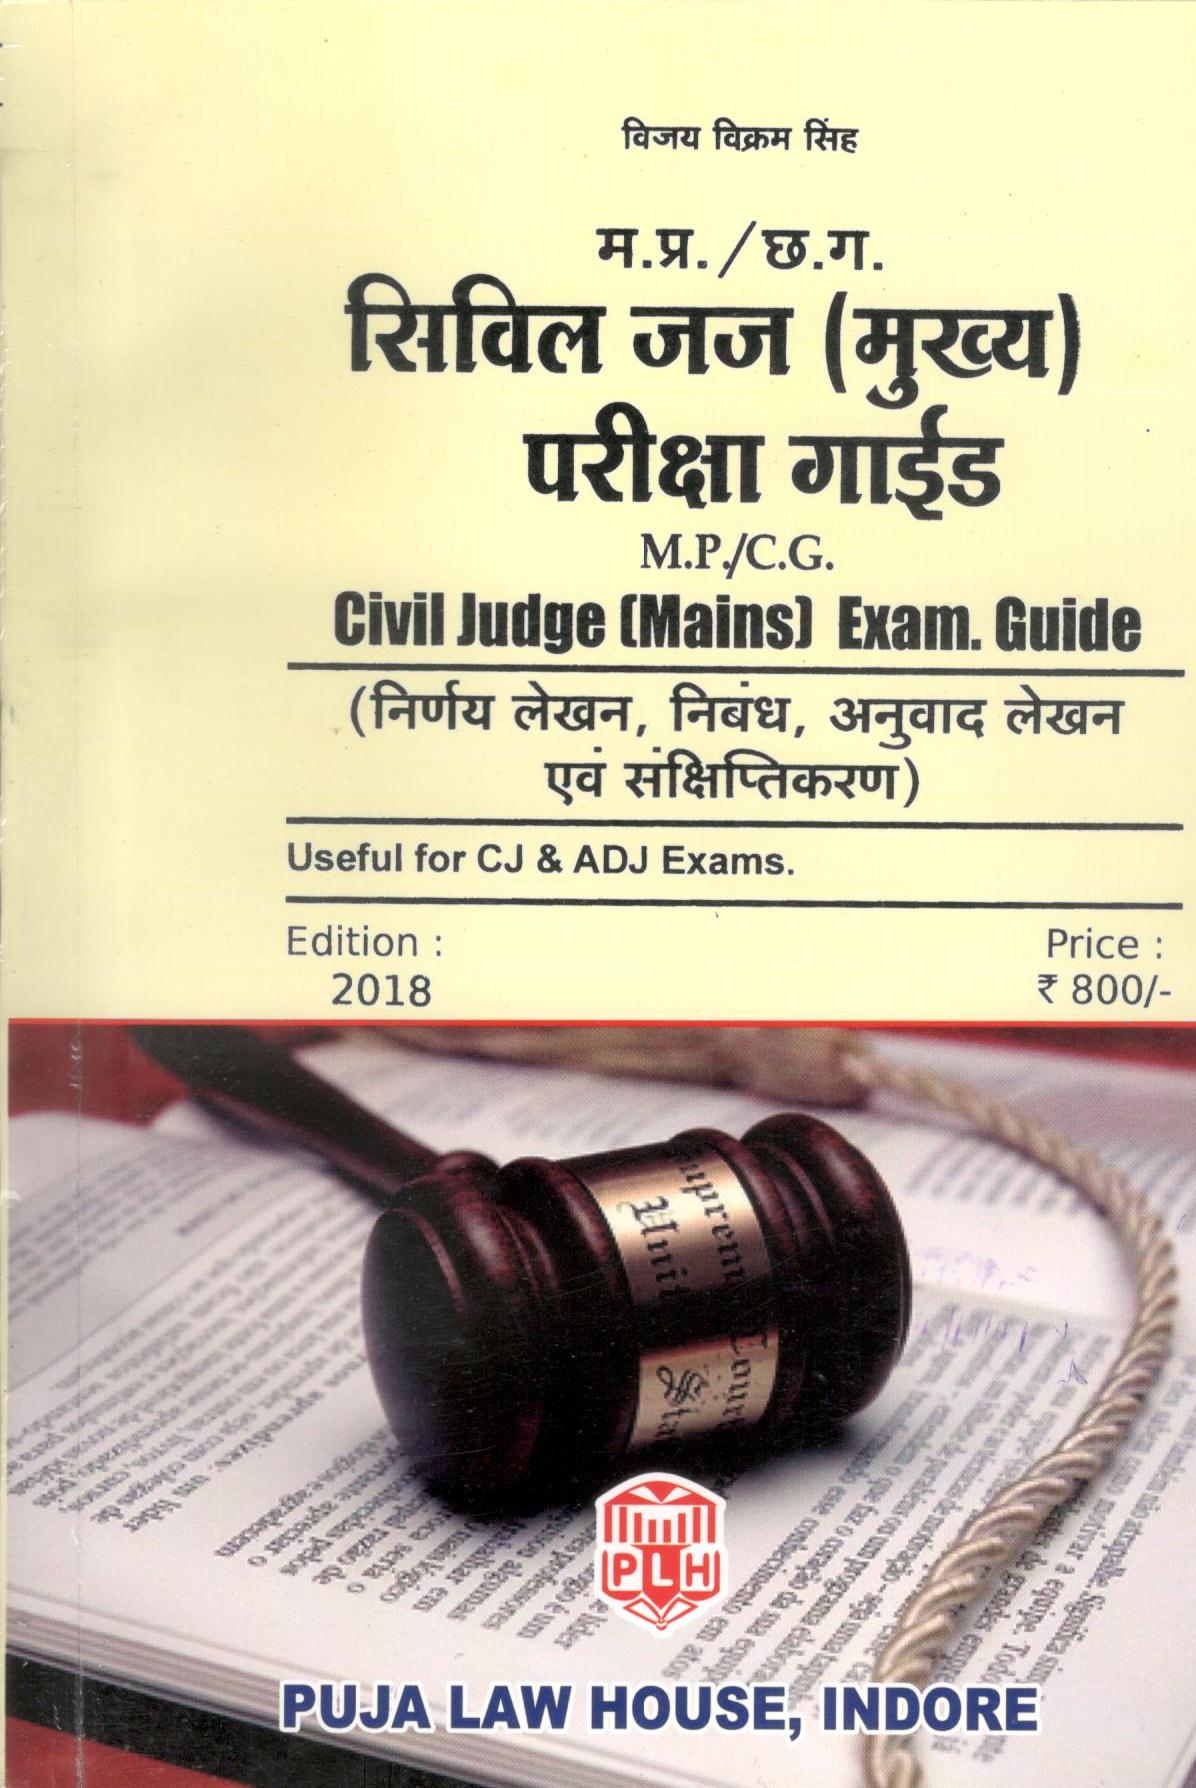 विजय विक्रम सिंह - M.P./C.G. Civil Judge (Mains) Exam Guide / मध्य प्रदेश / छत्तीसगढ़ सिविल जज (मुख्य) परीक्षा गाइड